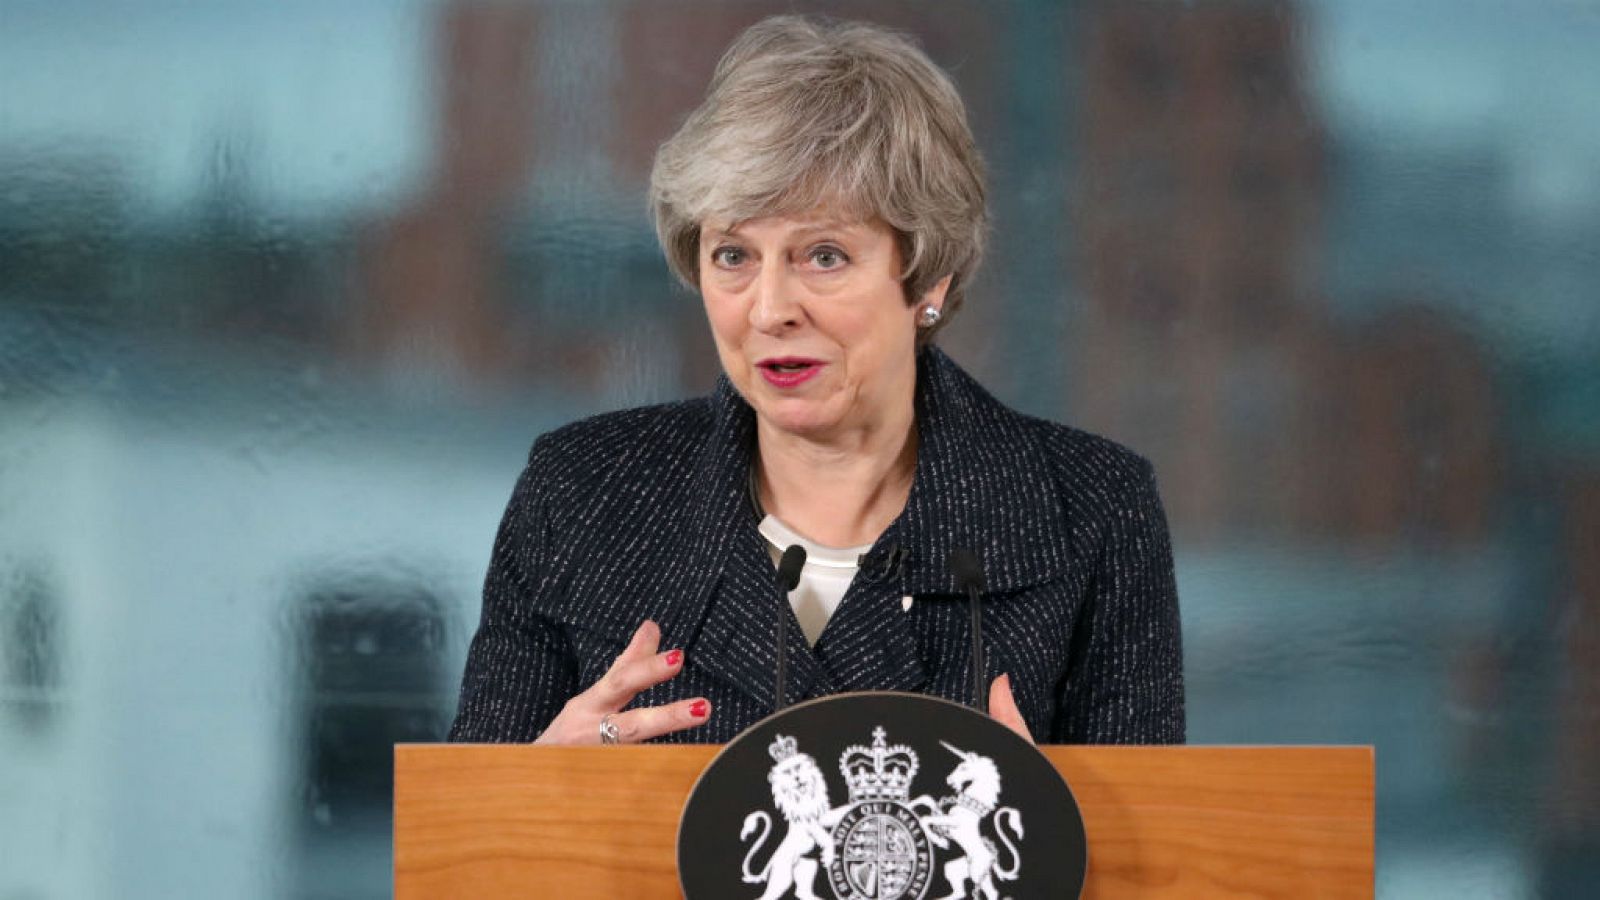 Boletines RNE - Theresa May deja la puerta abierta a flexibilizar su posición ante el Brexit - escuchar ahora